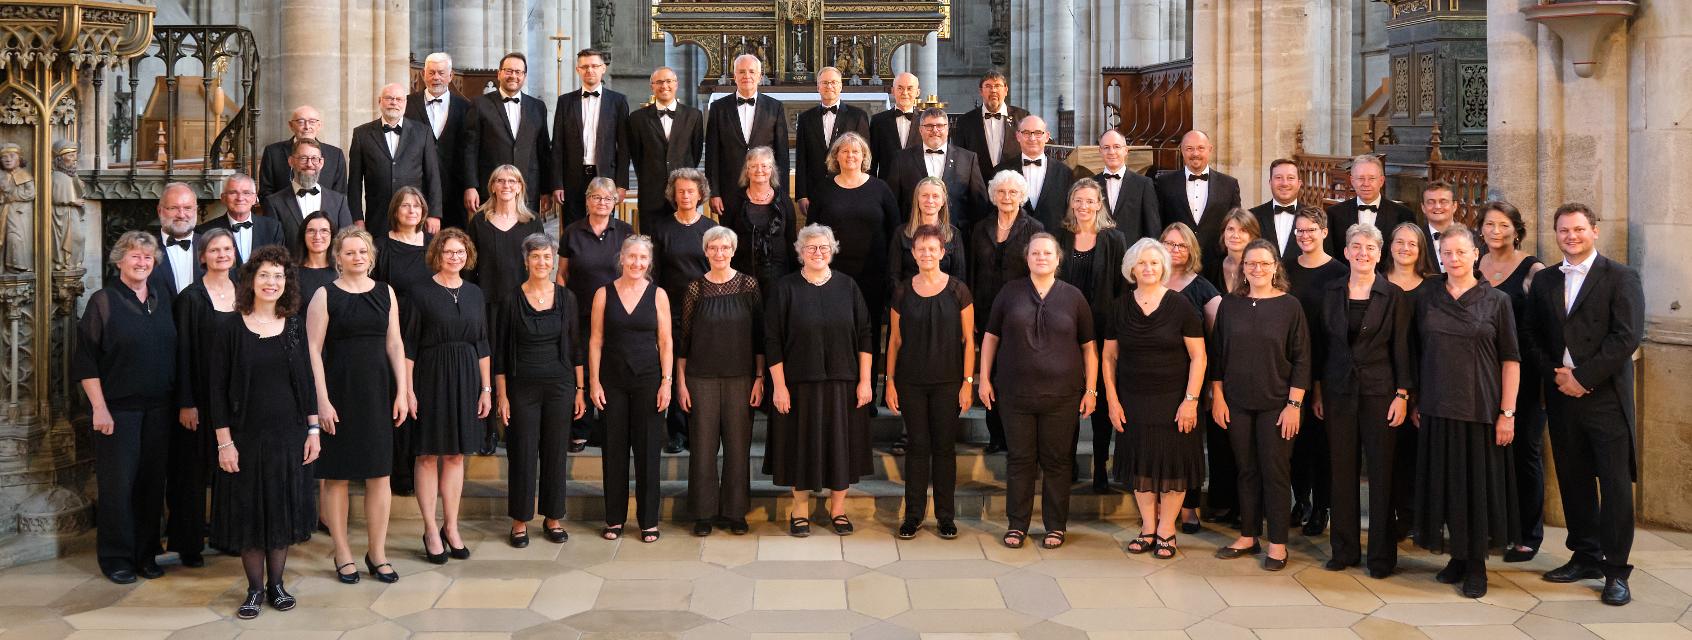 Kirchenkonzert, Chor a-cappella und Orgelwerke